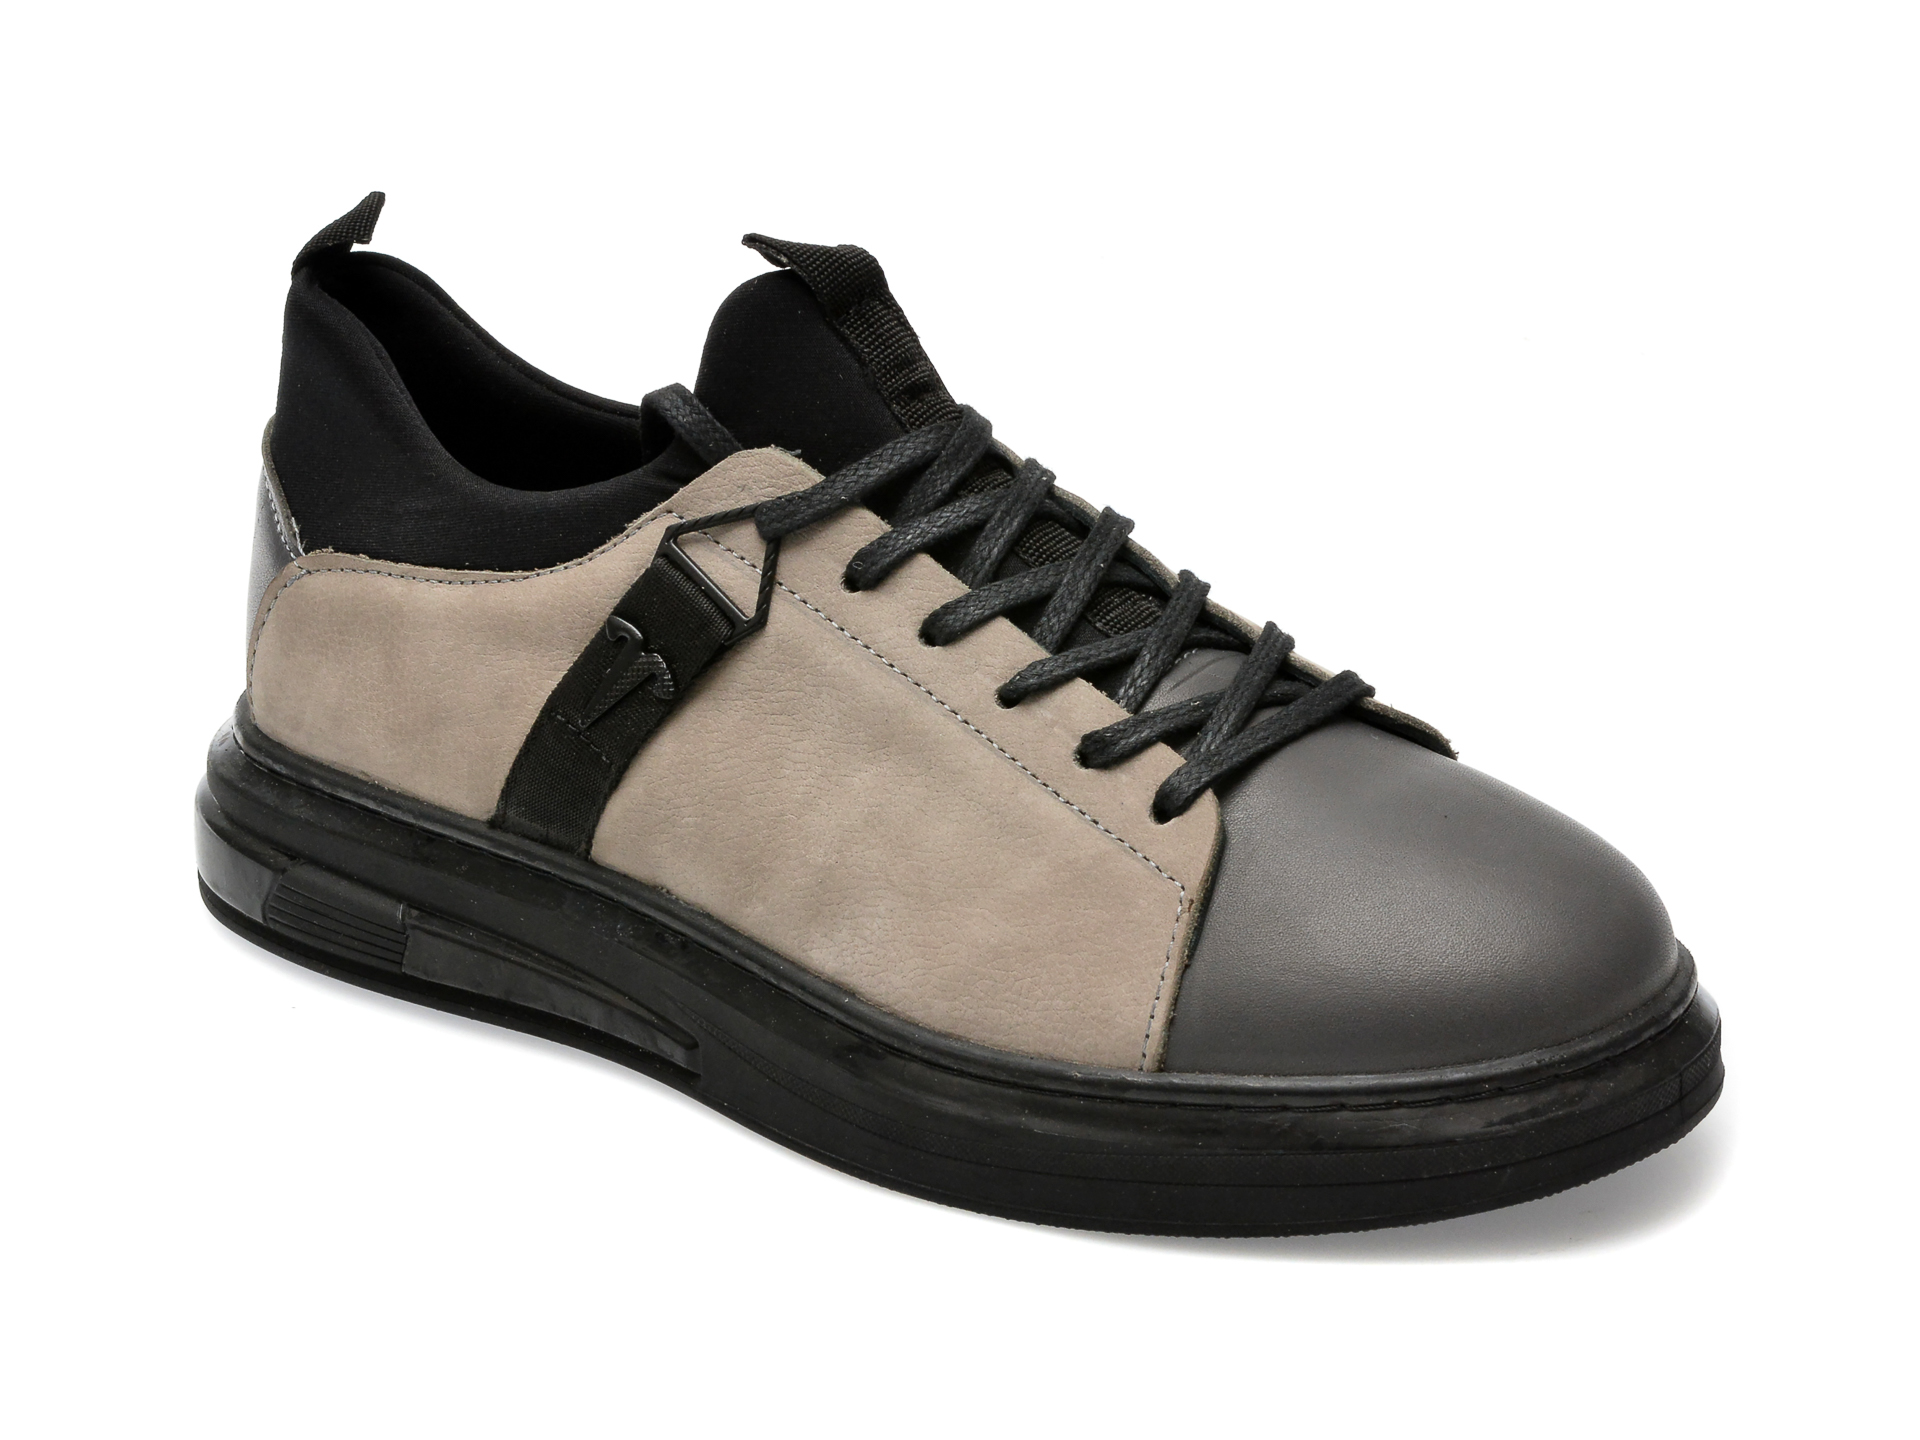 Pantofi Gryxx Gri, Ms3006, Din Nabuc